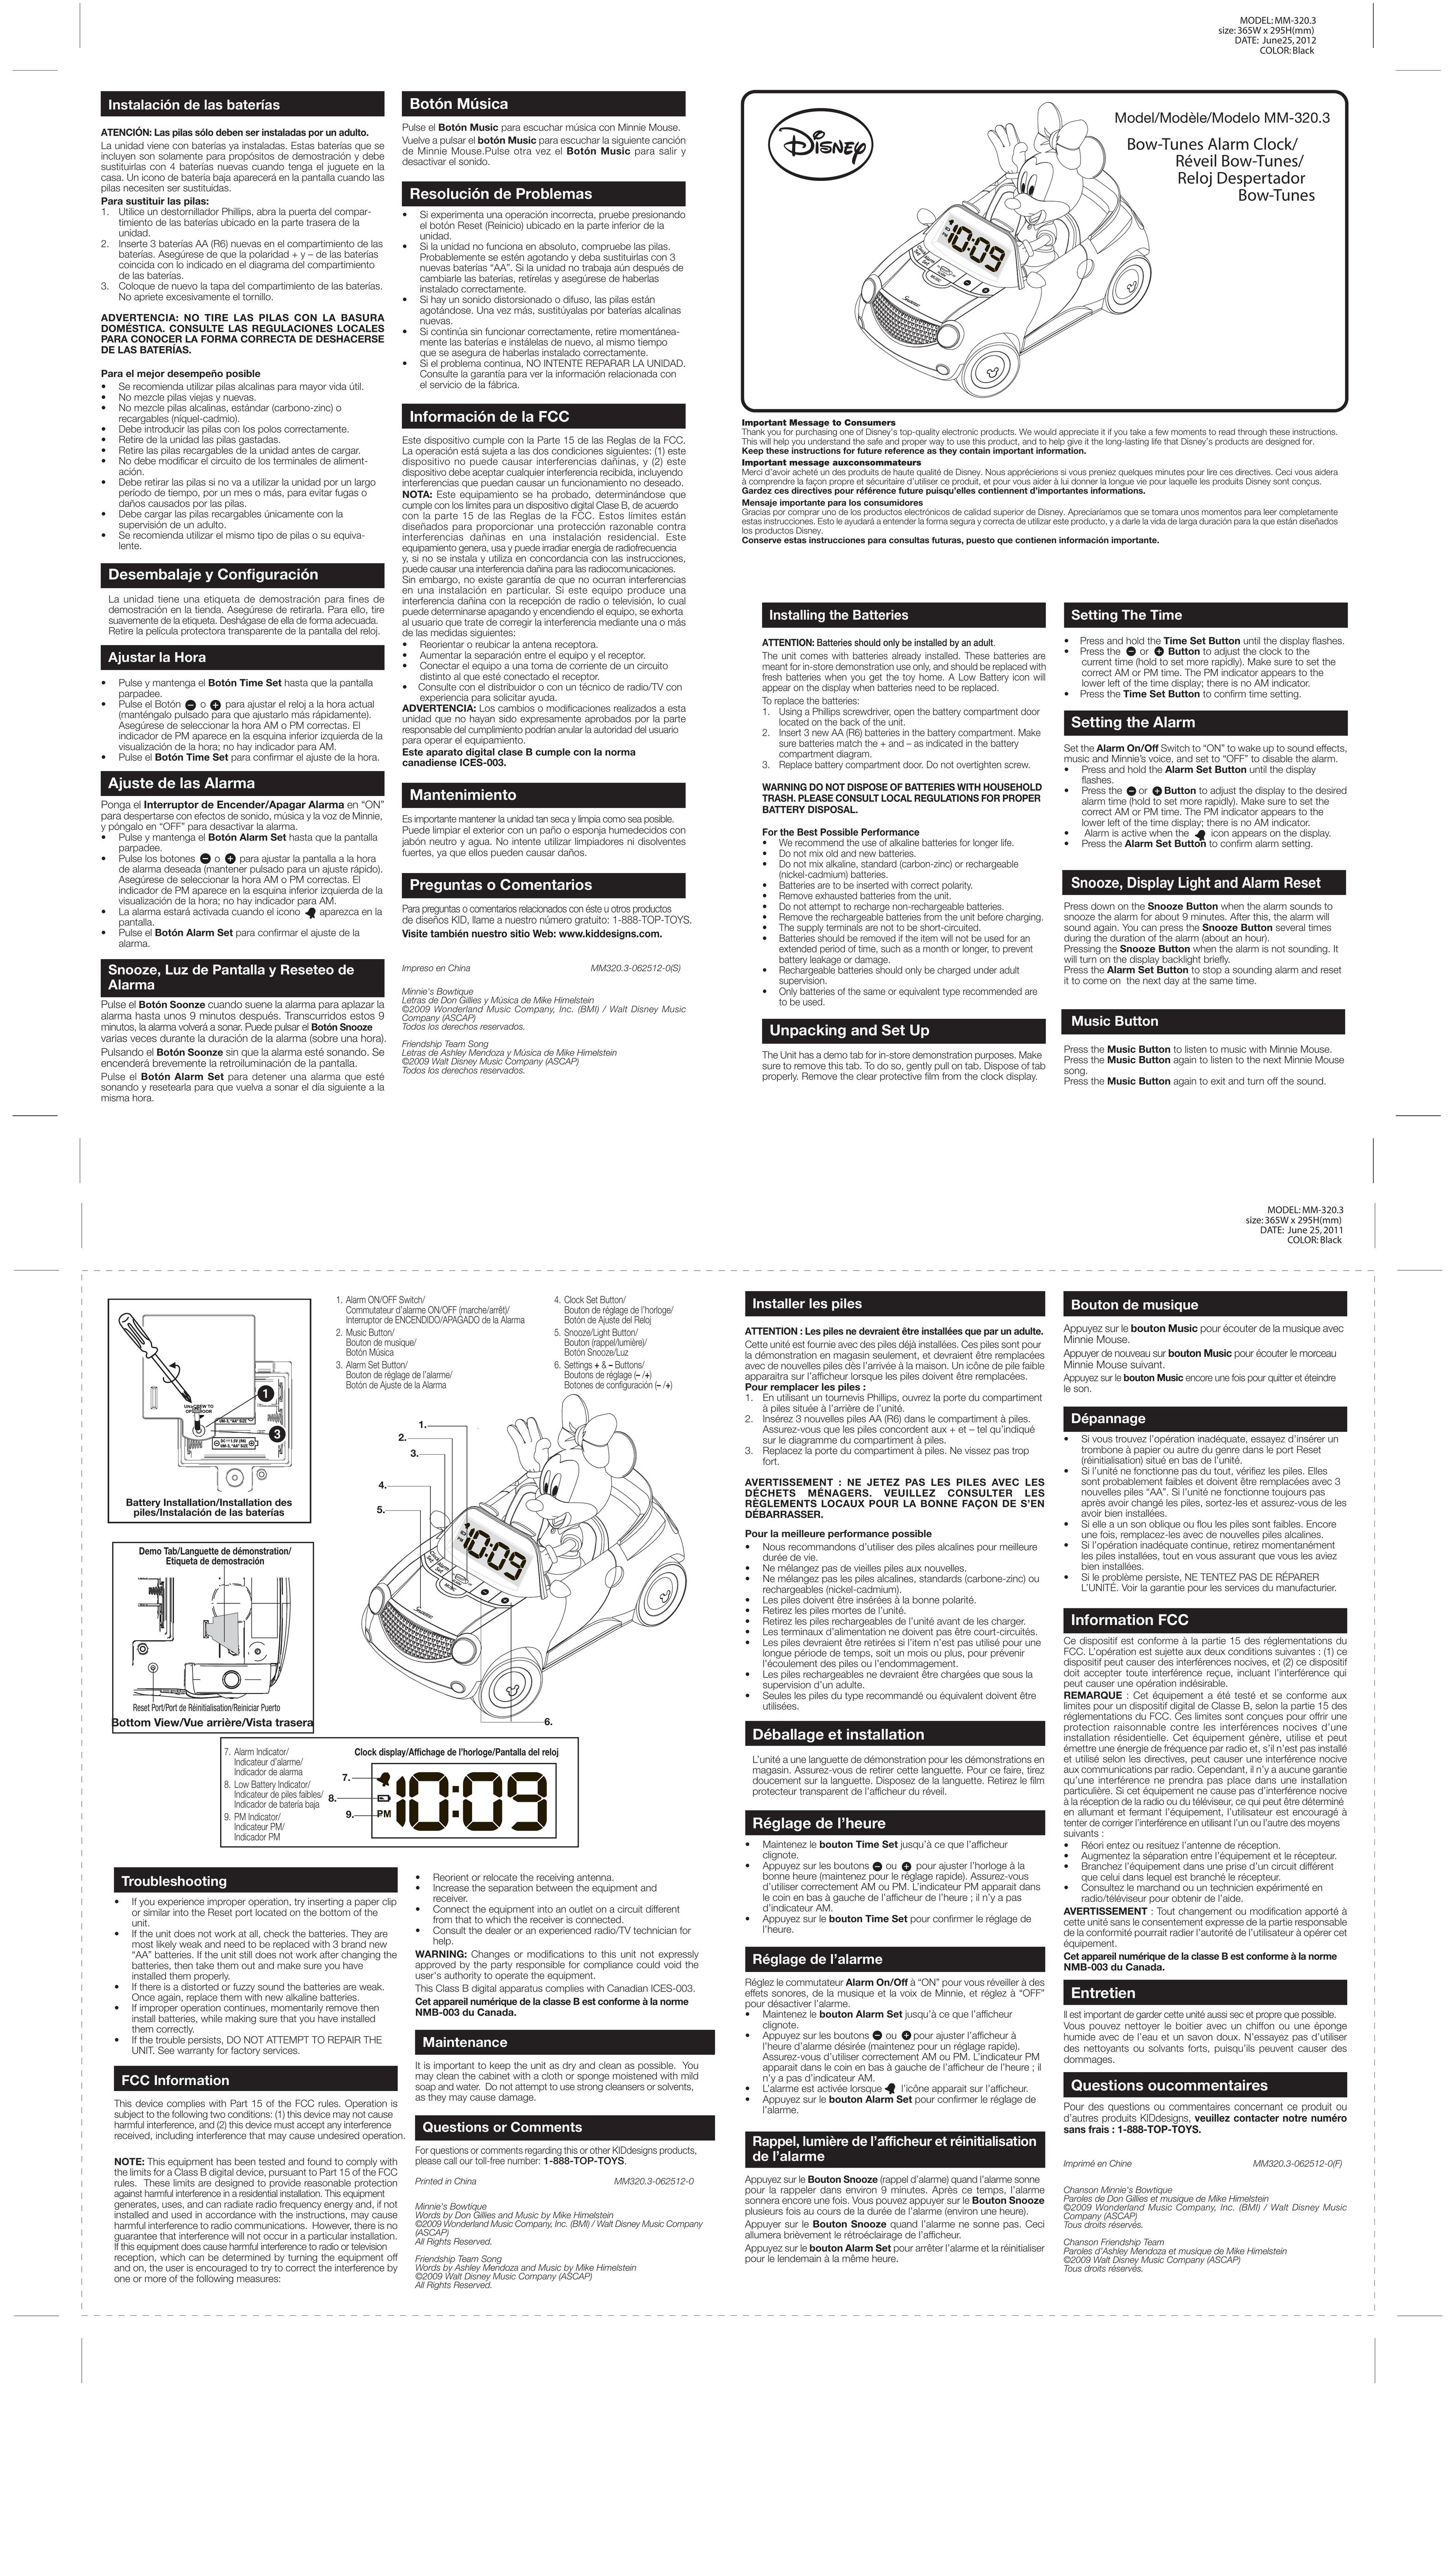 Disney MM-320.3 Clock User Manual